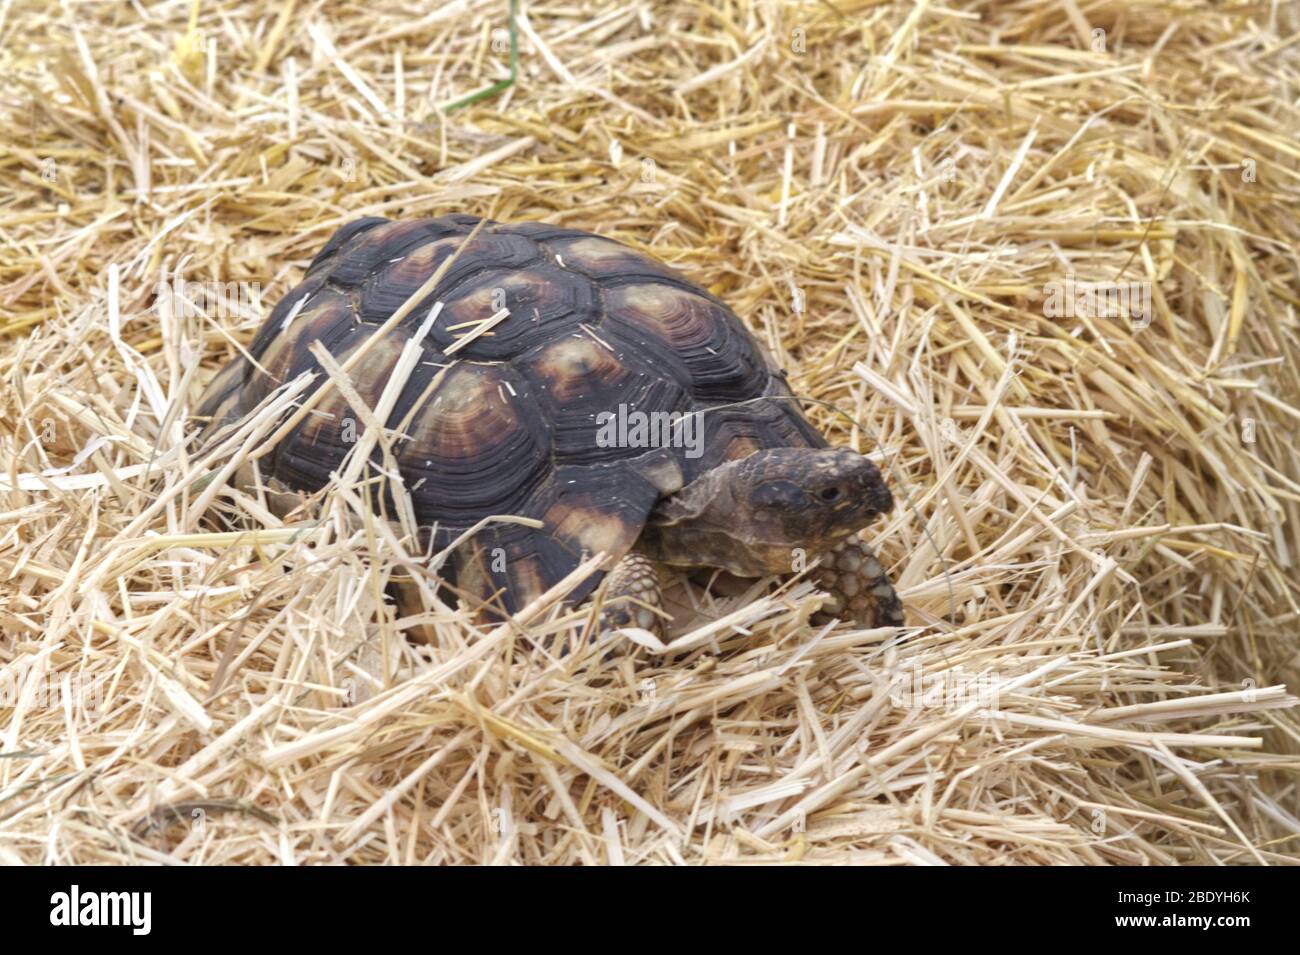 Mascota Horsfield tortuga en paja Foto de stock